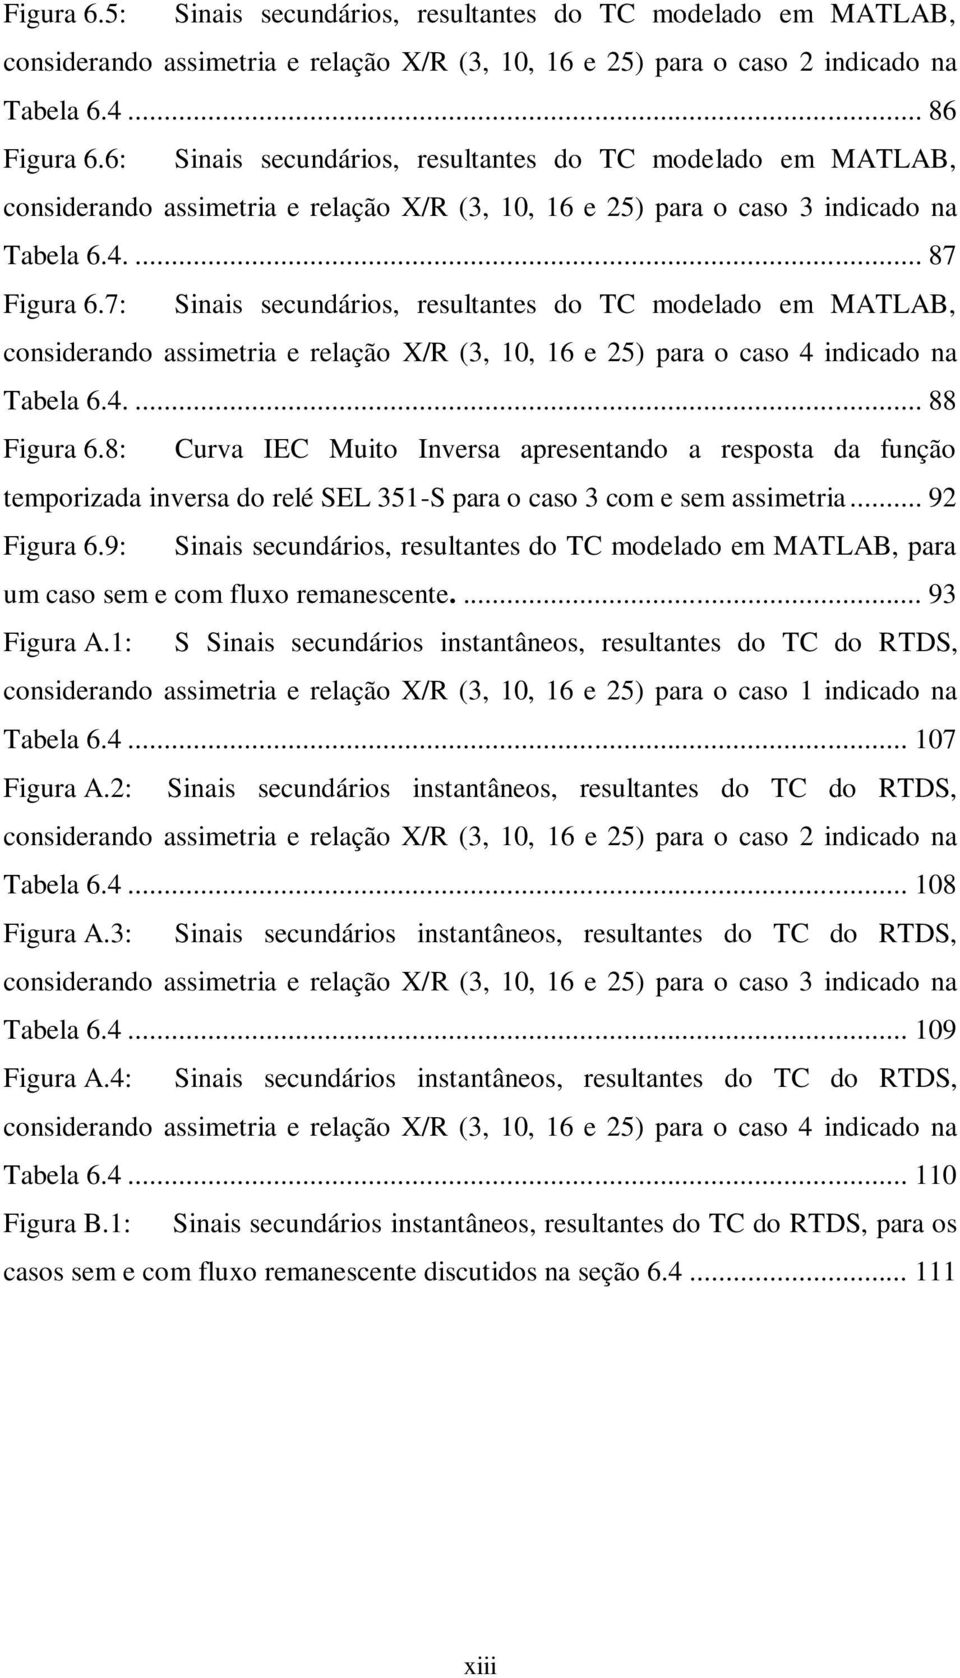 7: Sinais secundários, resultantes do TC modelado em MATLAB, considerando assimetria e relação X/R (3, 10, 16 e 25) para o caso 4 indicado na Tabela 6.4.... 88 Figura 6.